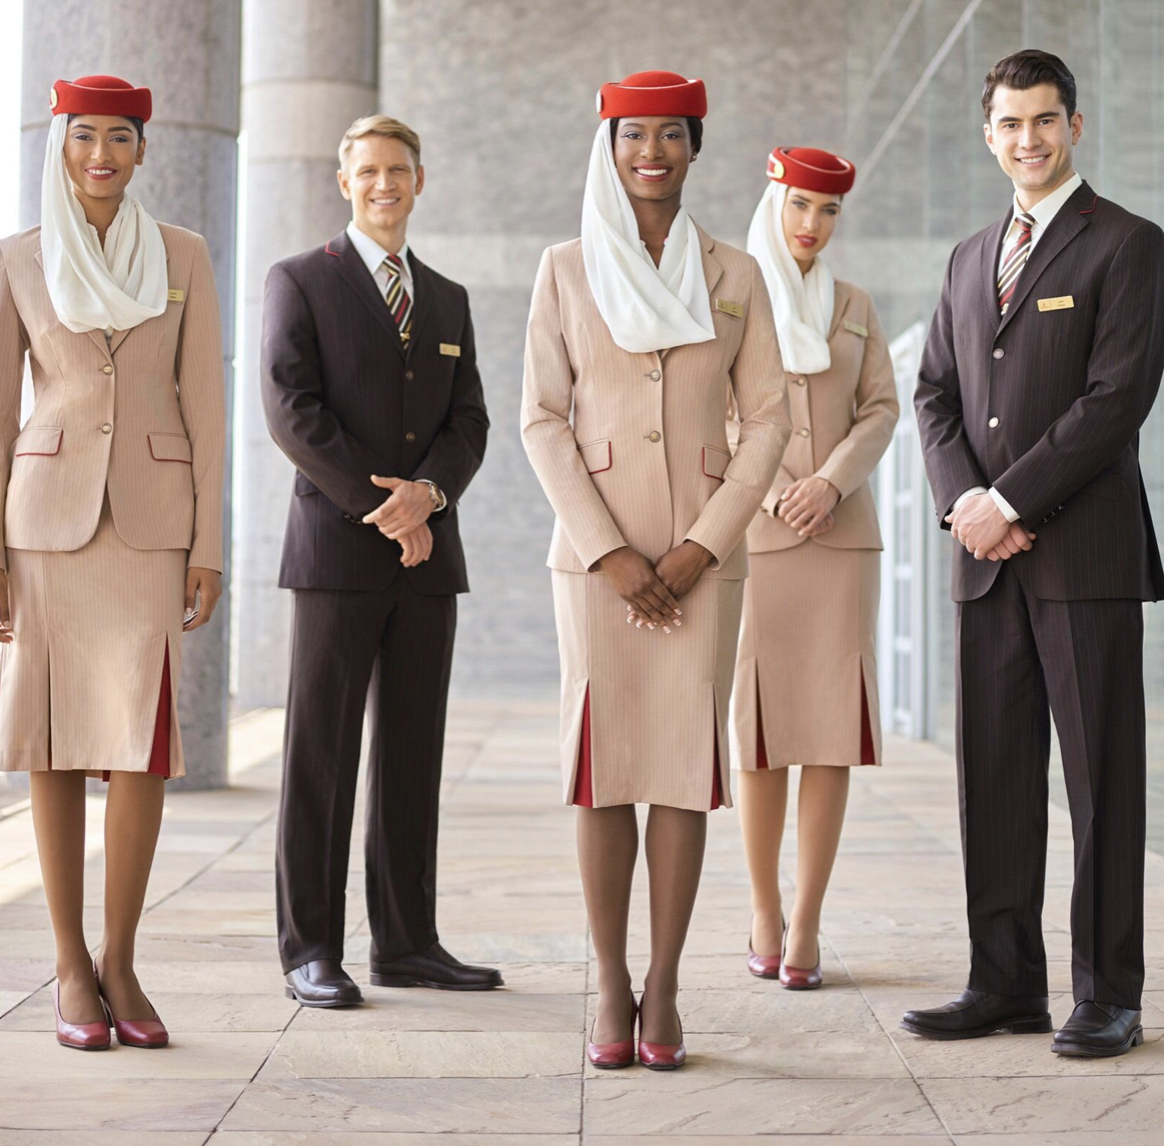 Emirates Airlines Cabin Crew Recruitment-Sep 2021